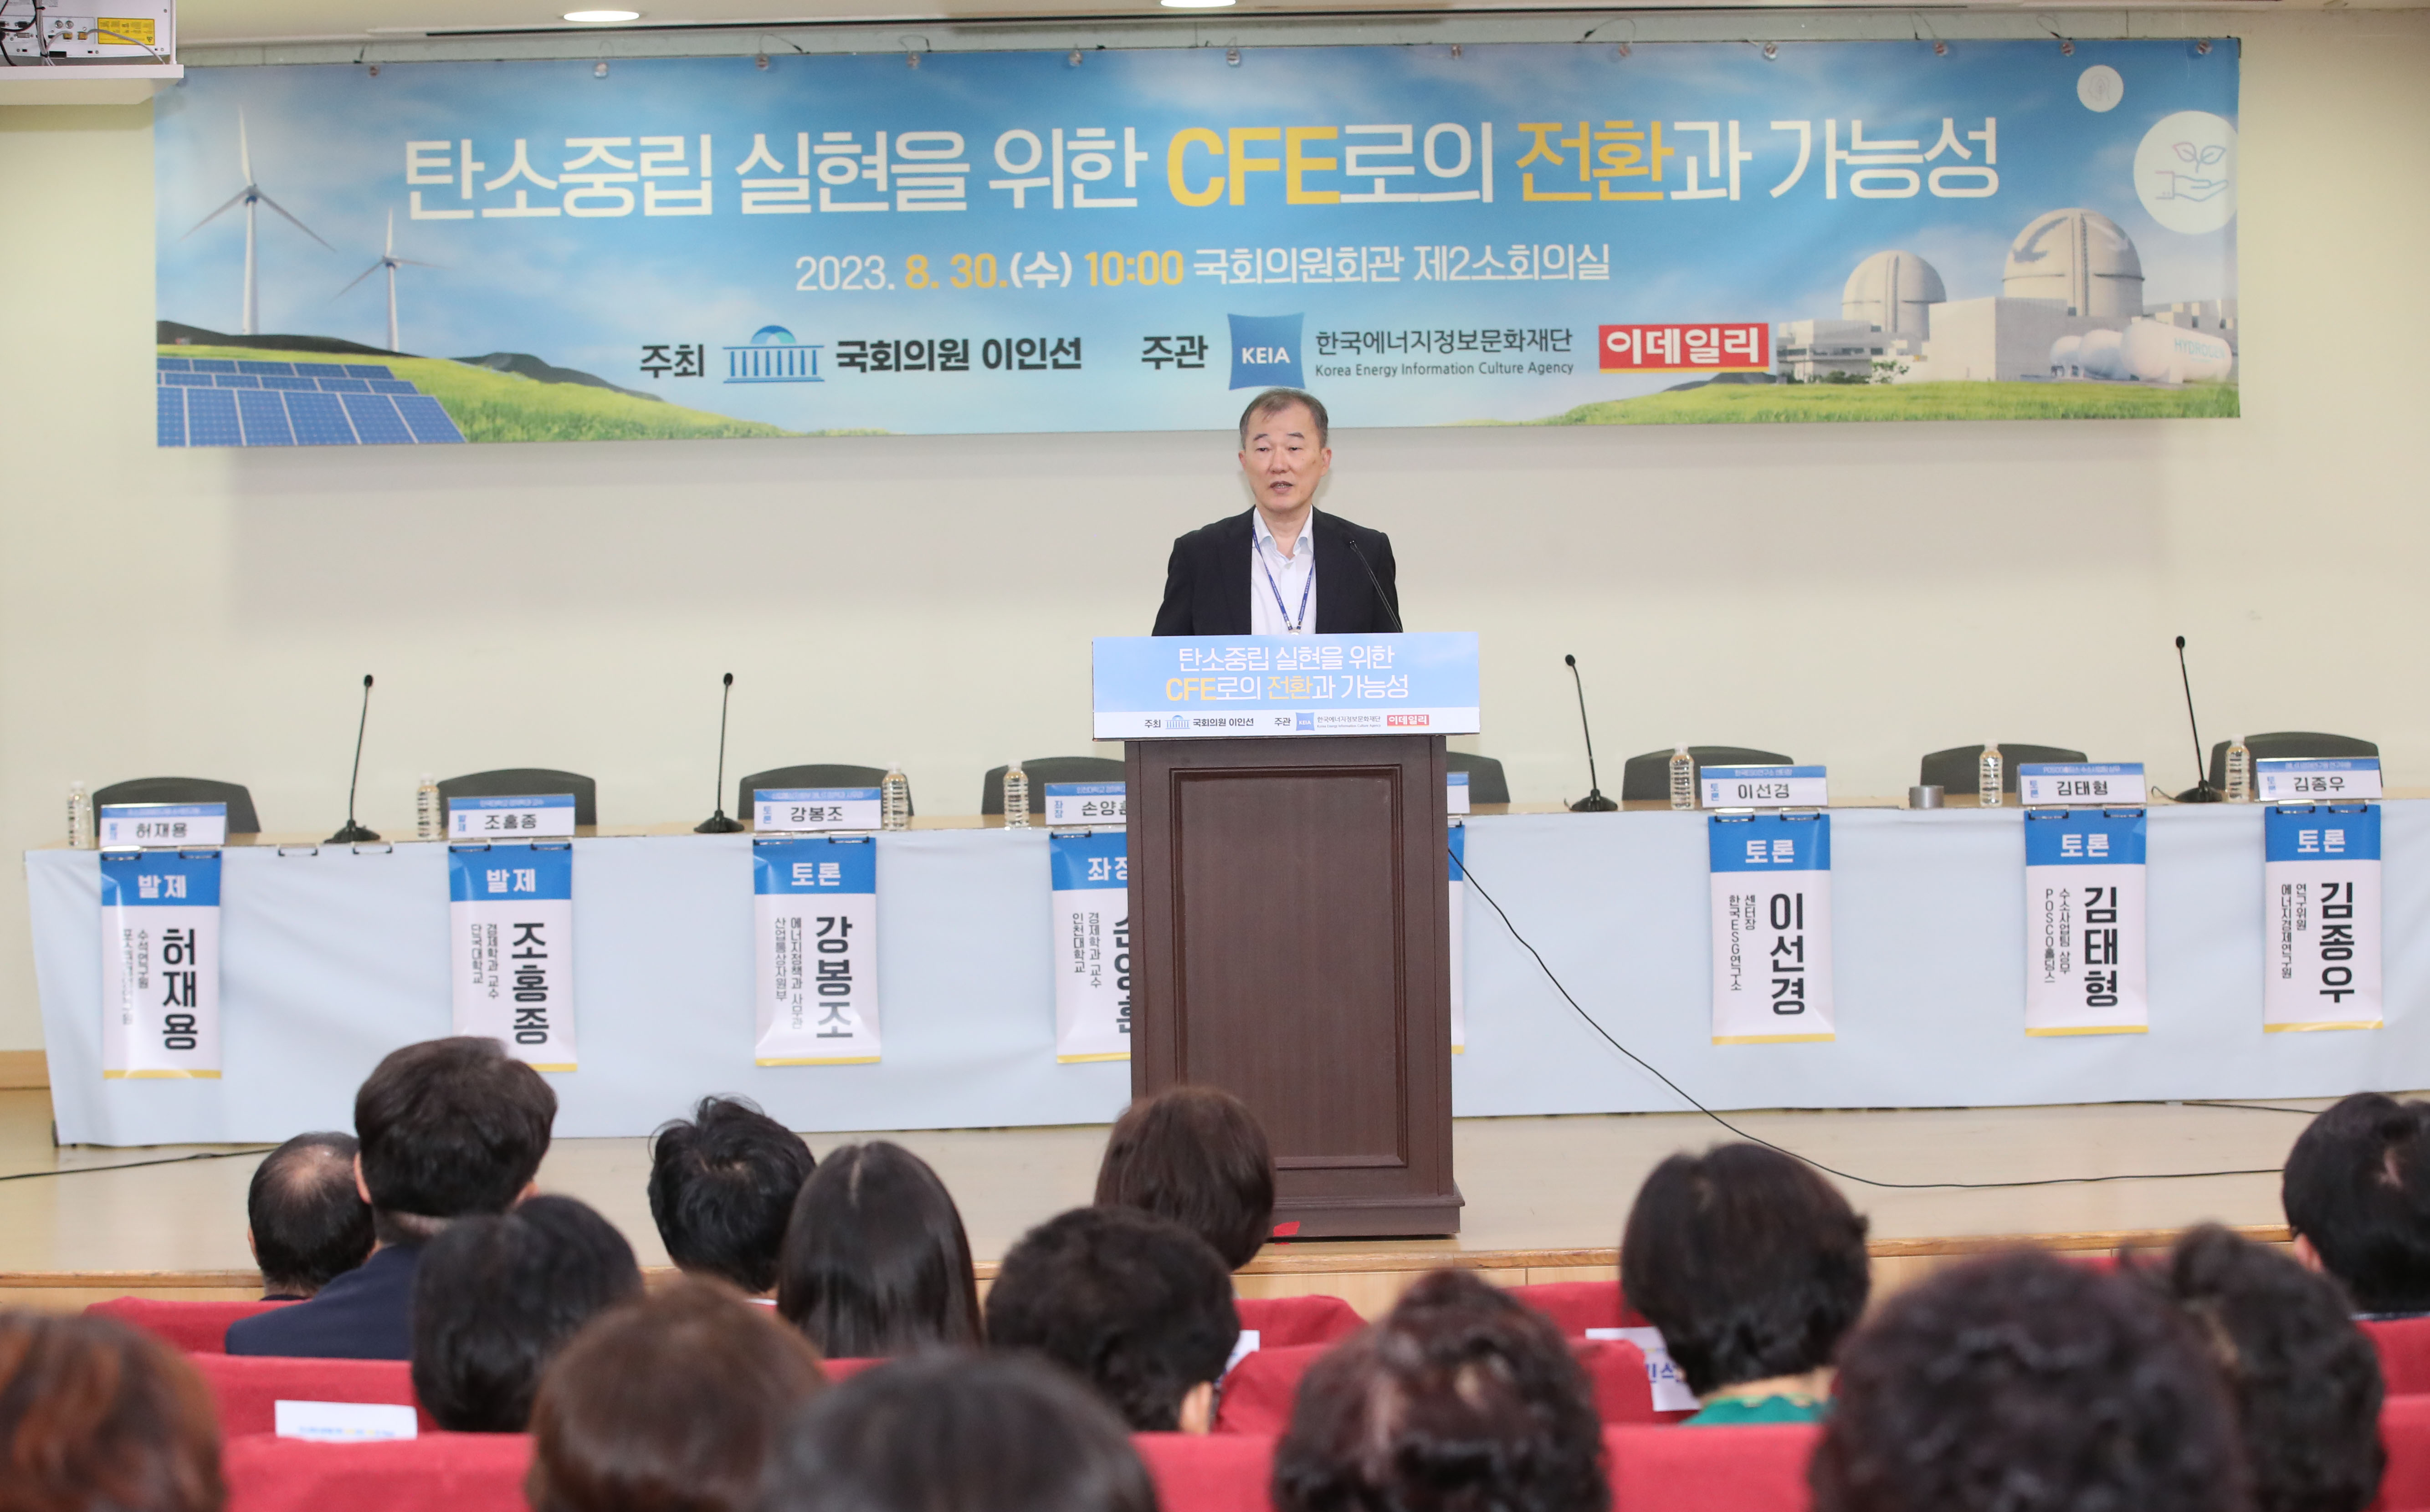 ⌜탄소중립 실현을 위한 CFE로의 전환과 가능성⌟ 국회토론회 개최